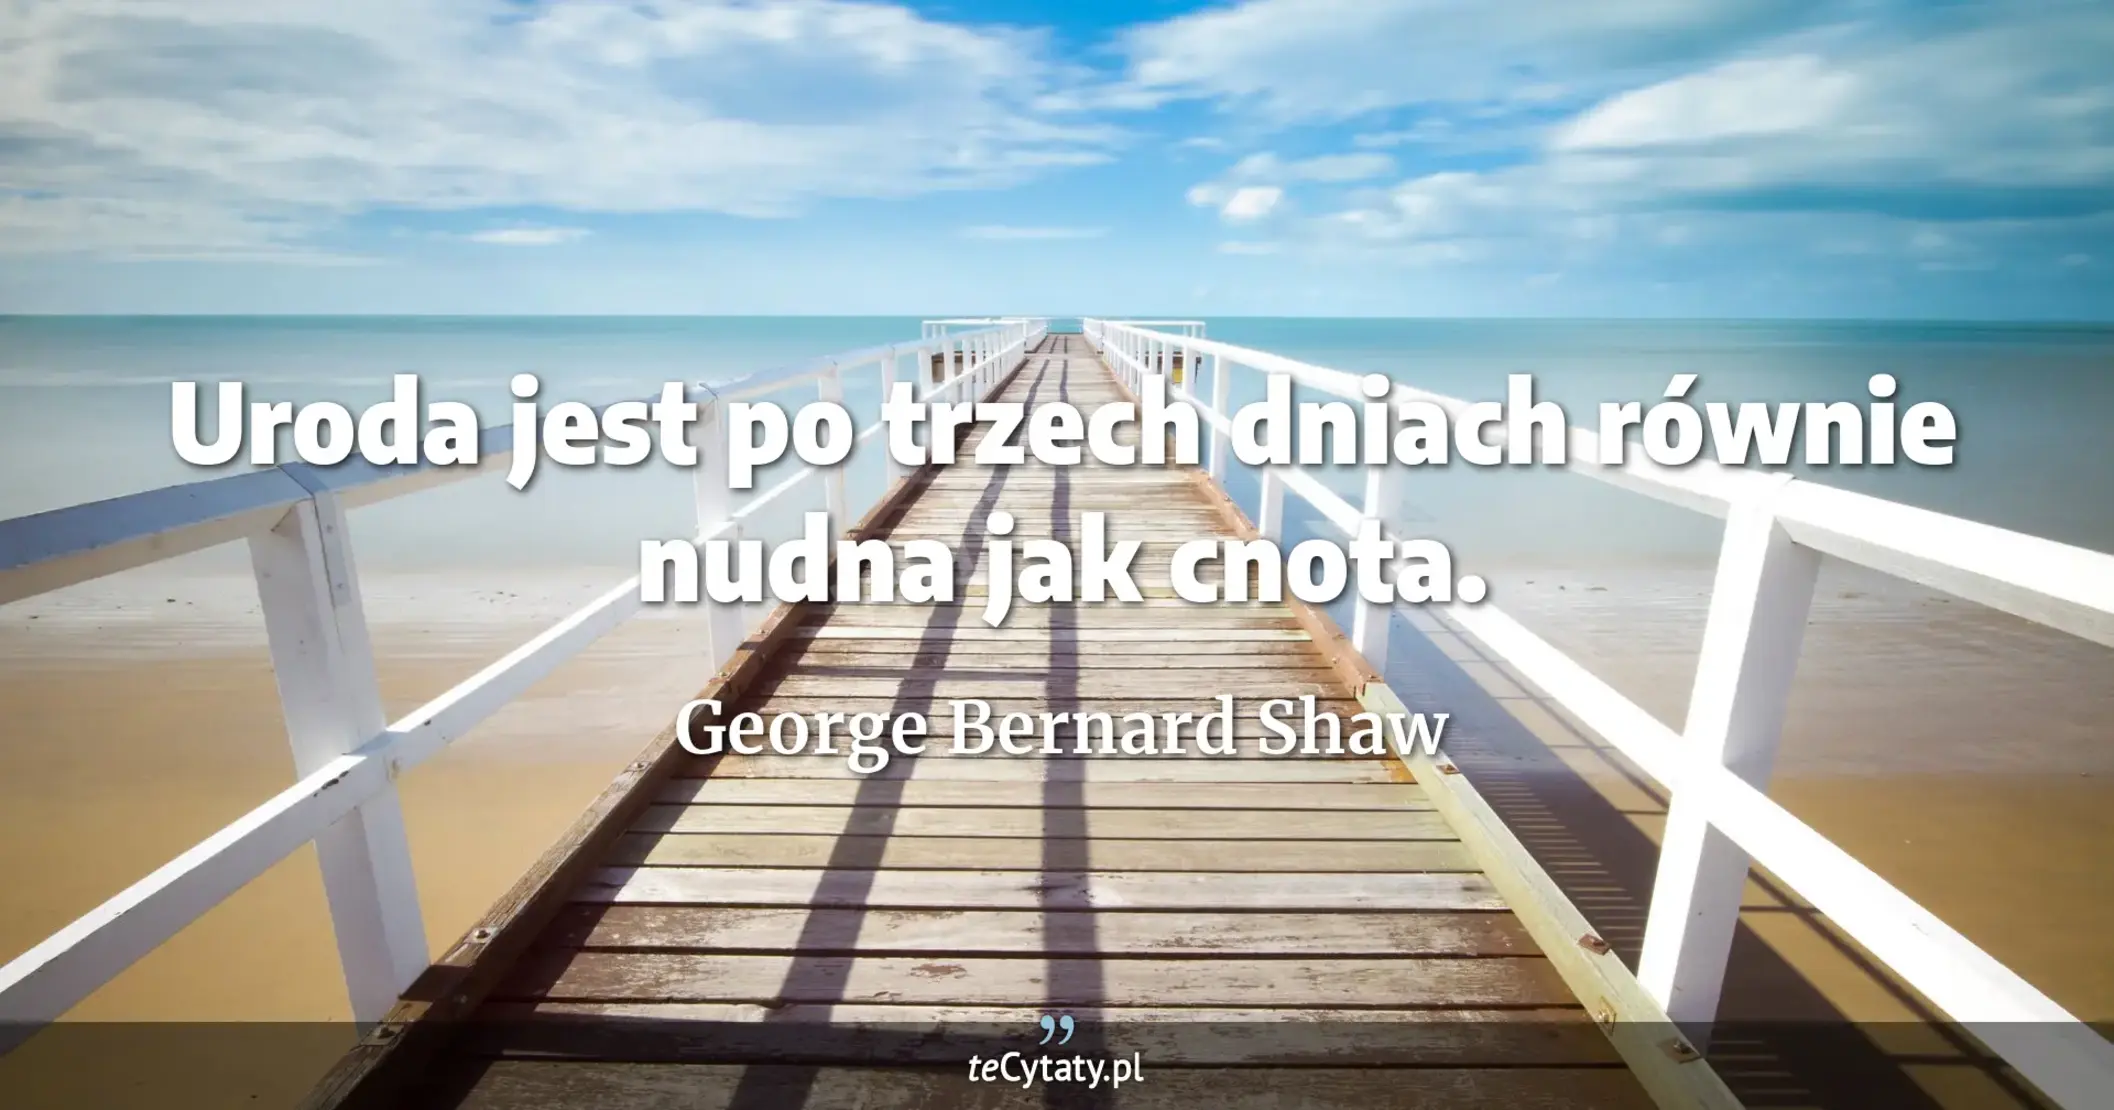 Uroda jest po trzech dniach równie nudna jak cnota. - George Bernard Shaw